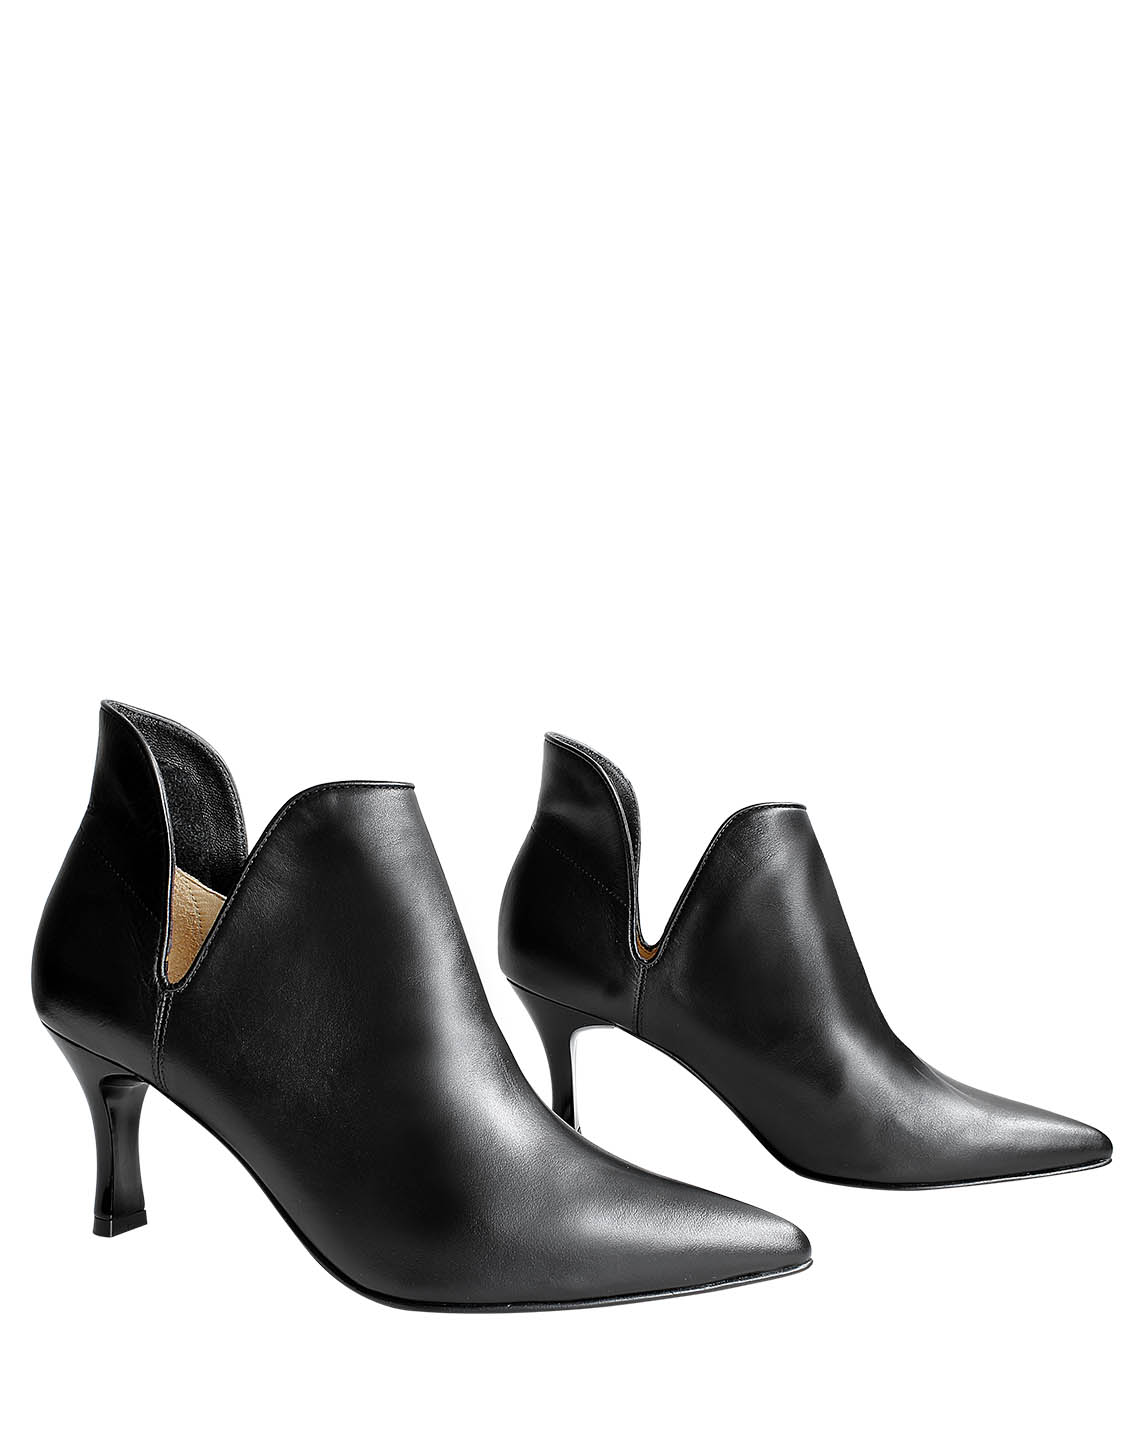 Zapatos Bootie FBU-9253 Color Negro